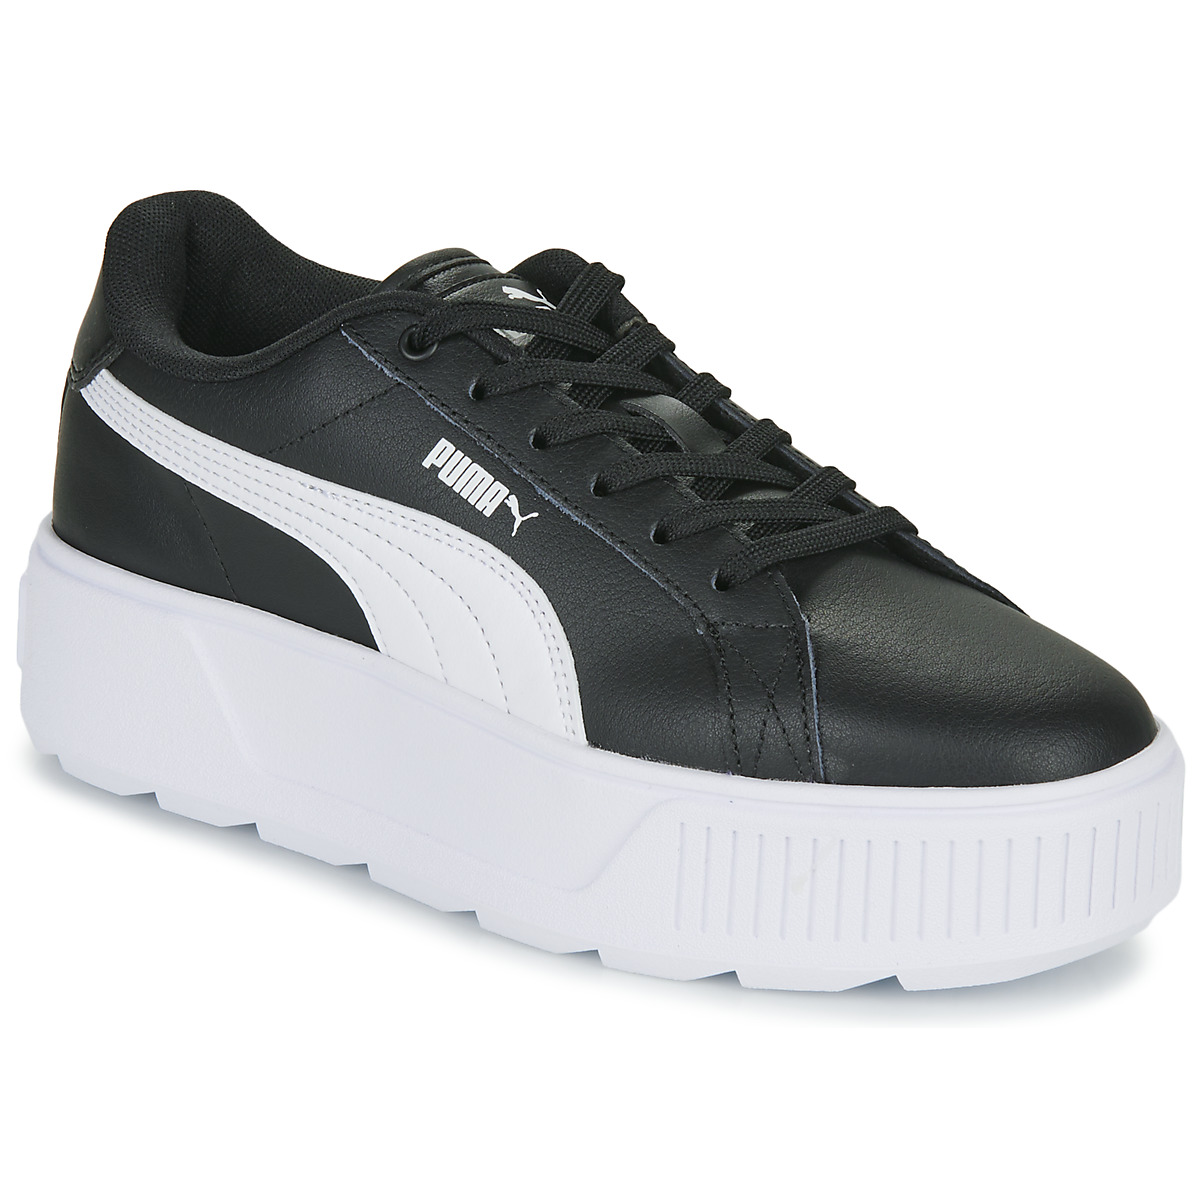 Chaussures Enfant Puma After Mirage Mox Suede Marathon Running Shoes Sneakers 381000-01 KARMEN L JR Noir / Blanc